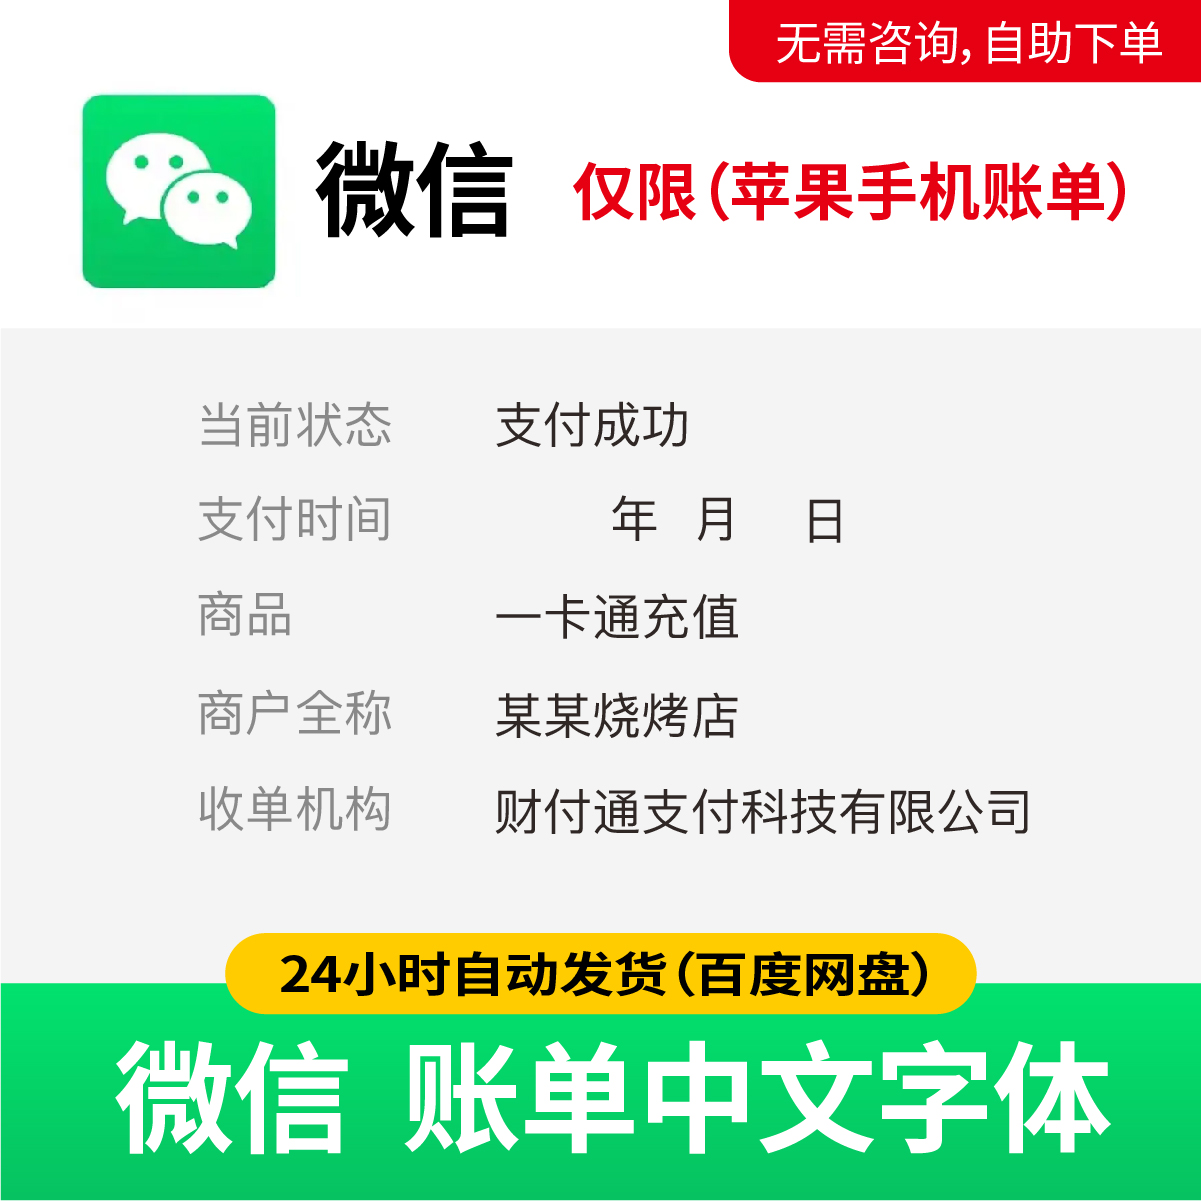 微信账单中文字体 微信字体 微信数字字体 微信时间字体 49